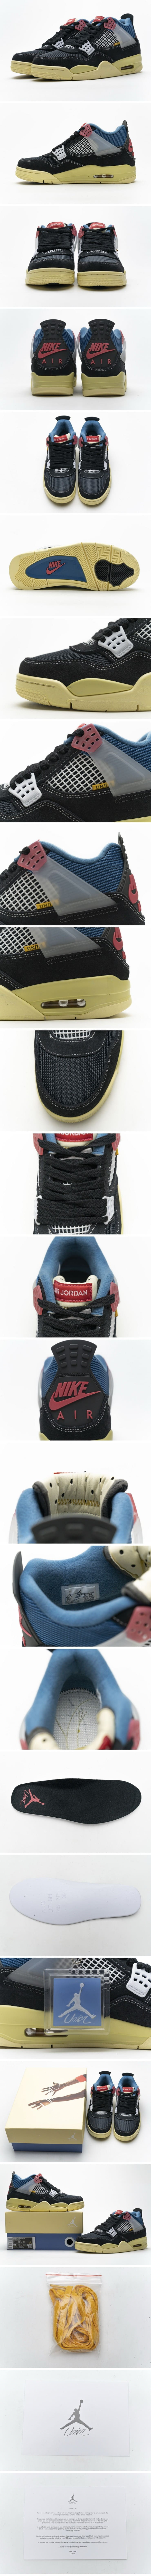 Nike x Union LA Air Jordan 4 Retro 